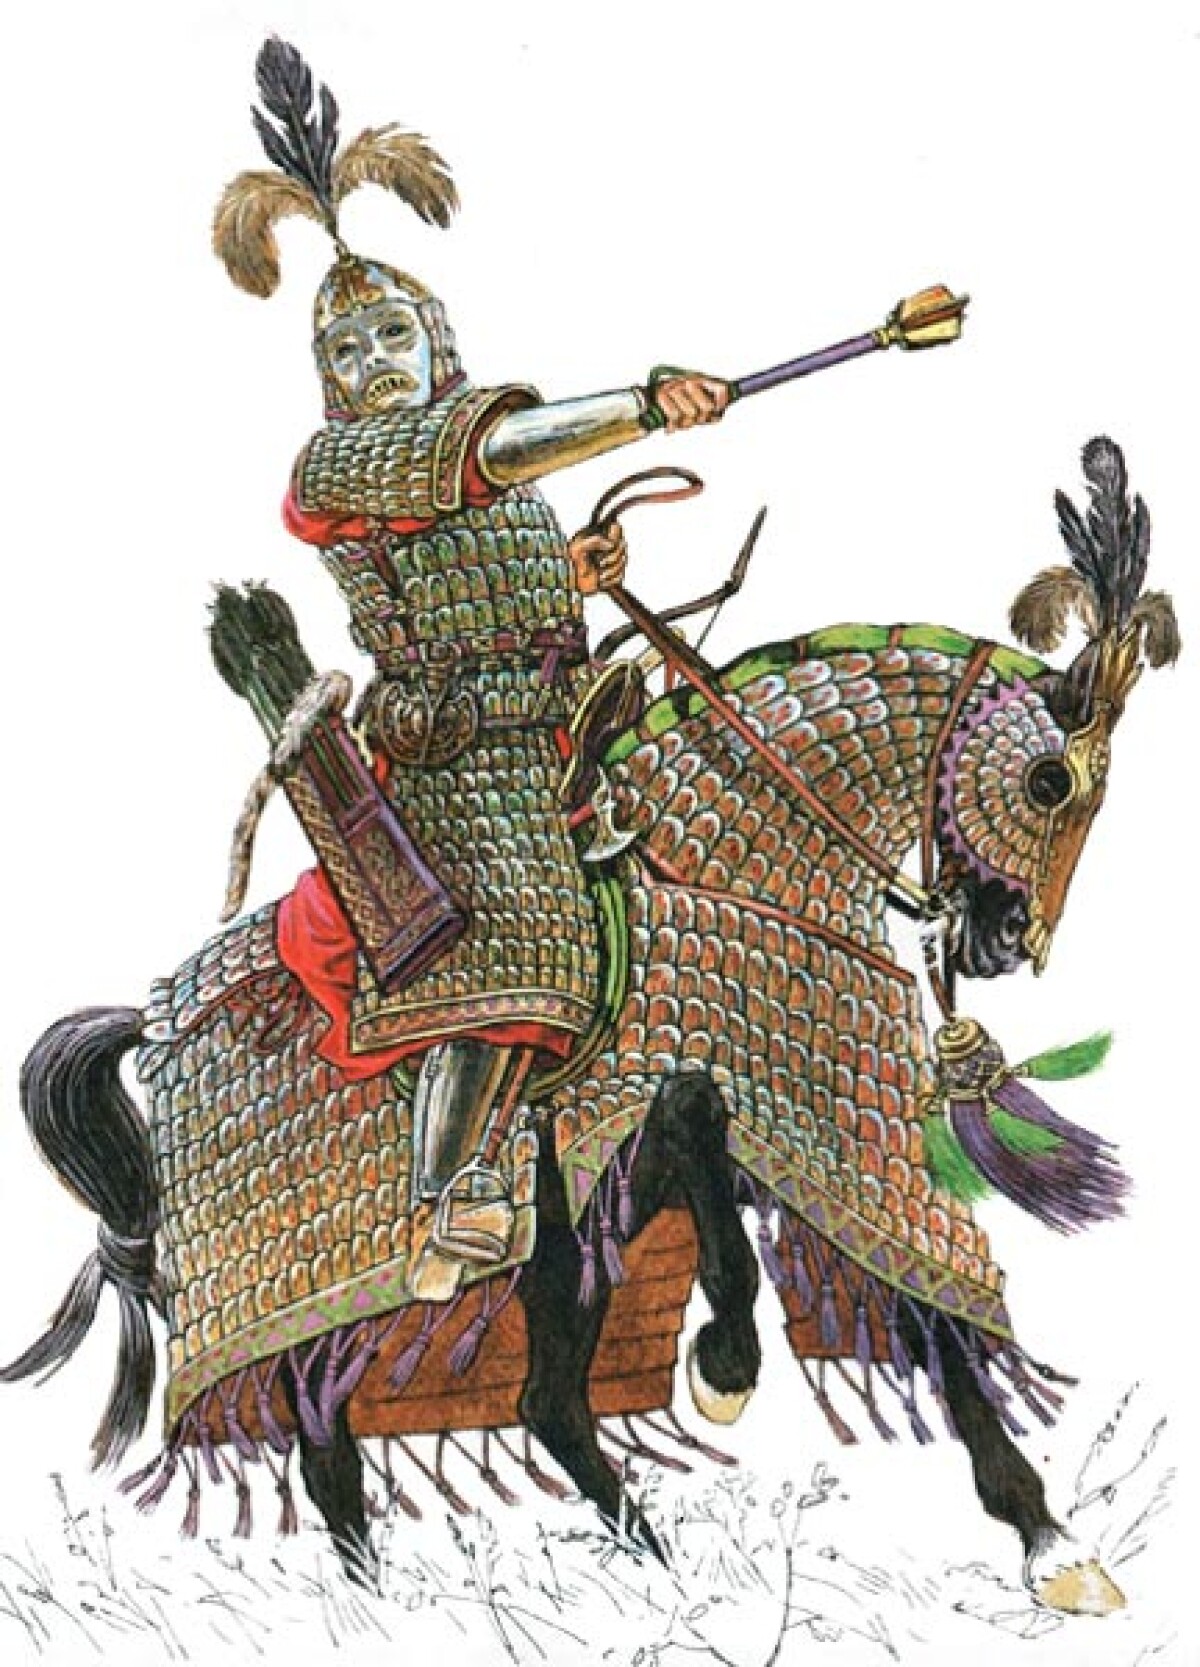  Завоевательные походы Чингиз-хана (1206-1227) - e-history.kz